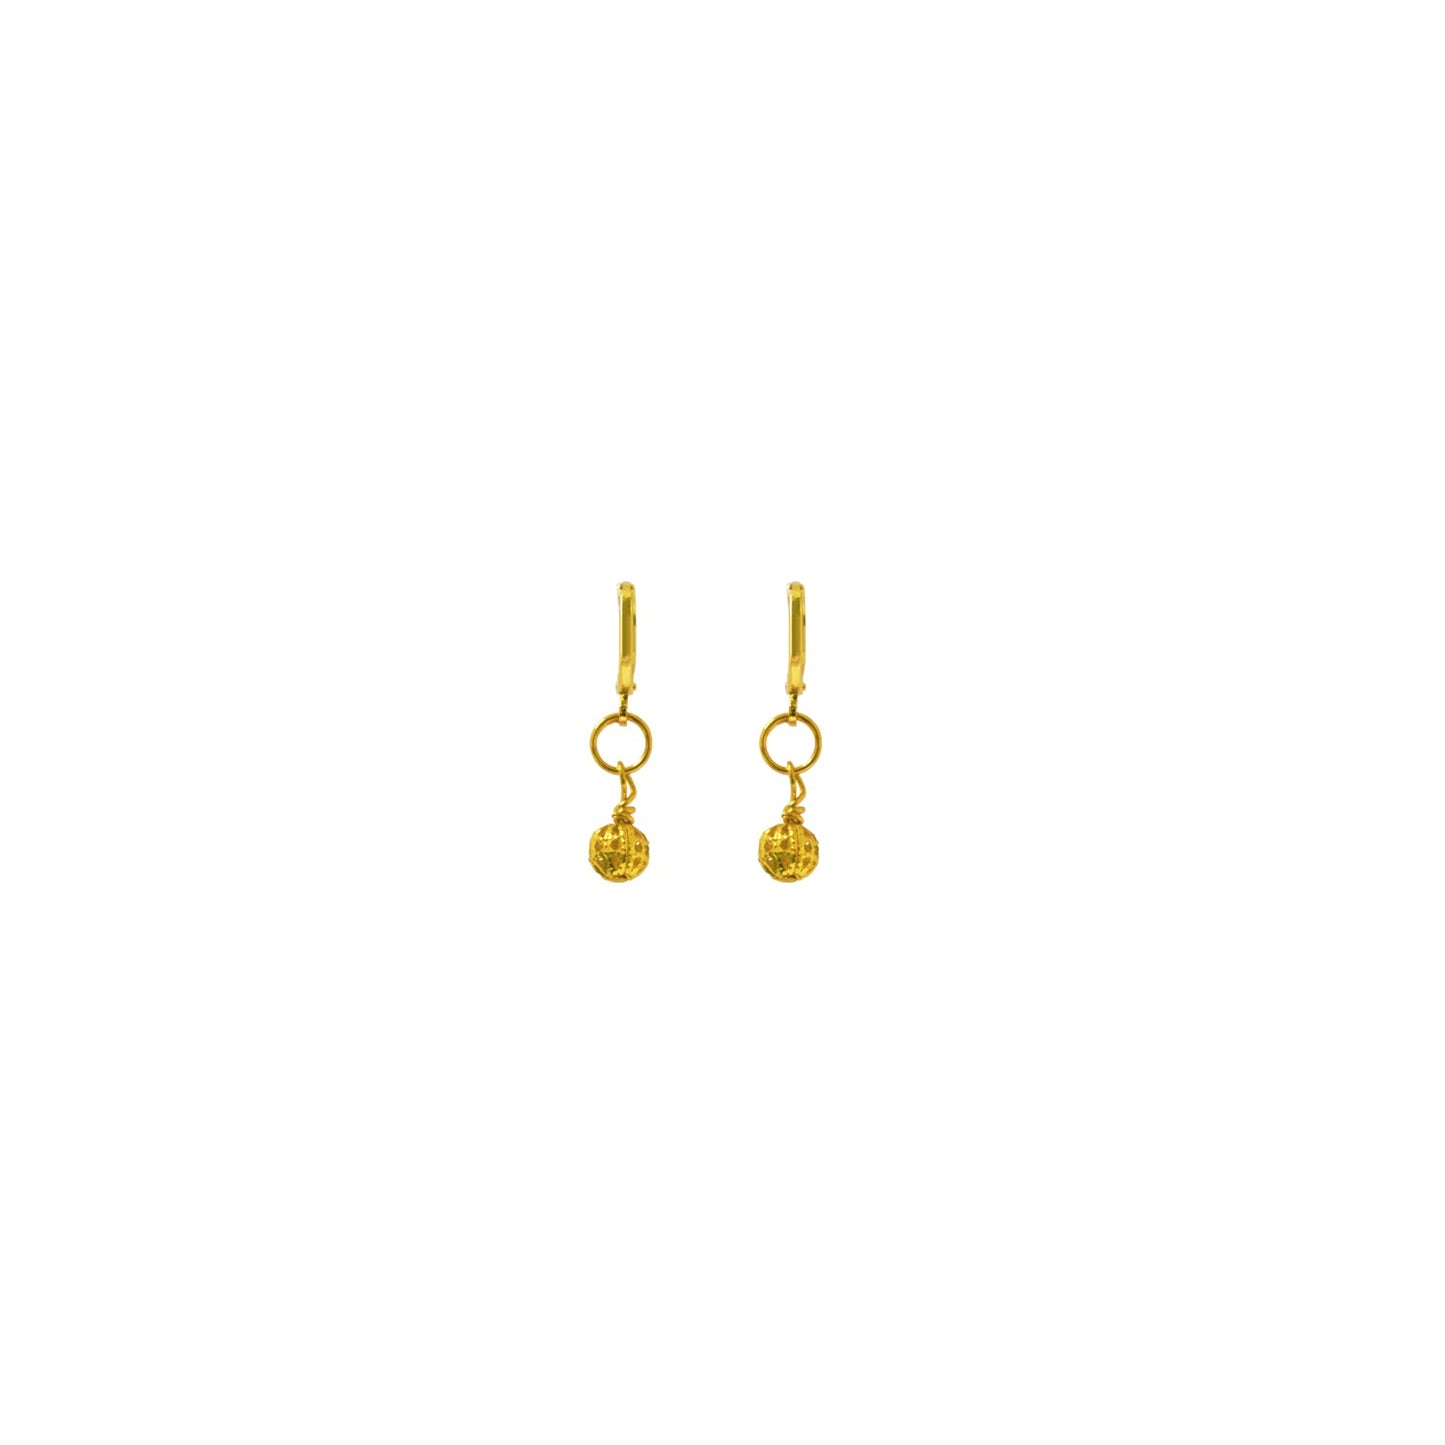 Gold Huggie Earrings, Filigree Huggie earrings, Chic Earrings, Elegant Huggie Ear Accessories | by lovedbynlanla-1